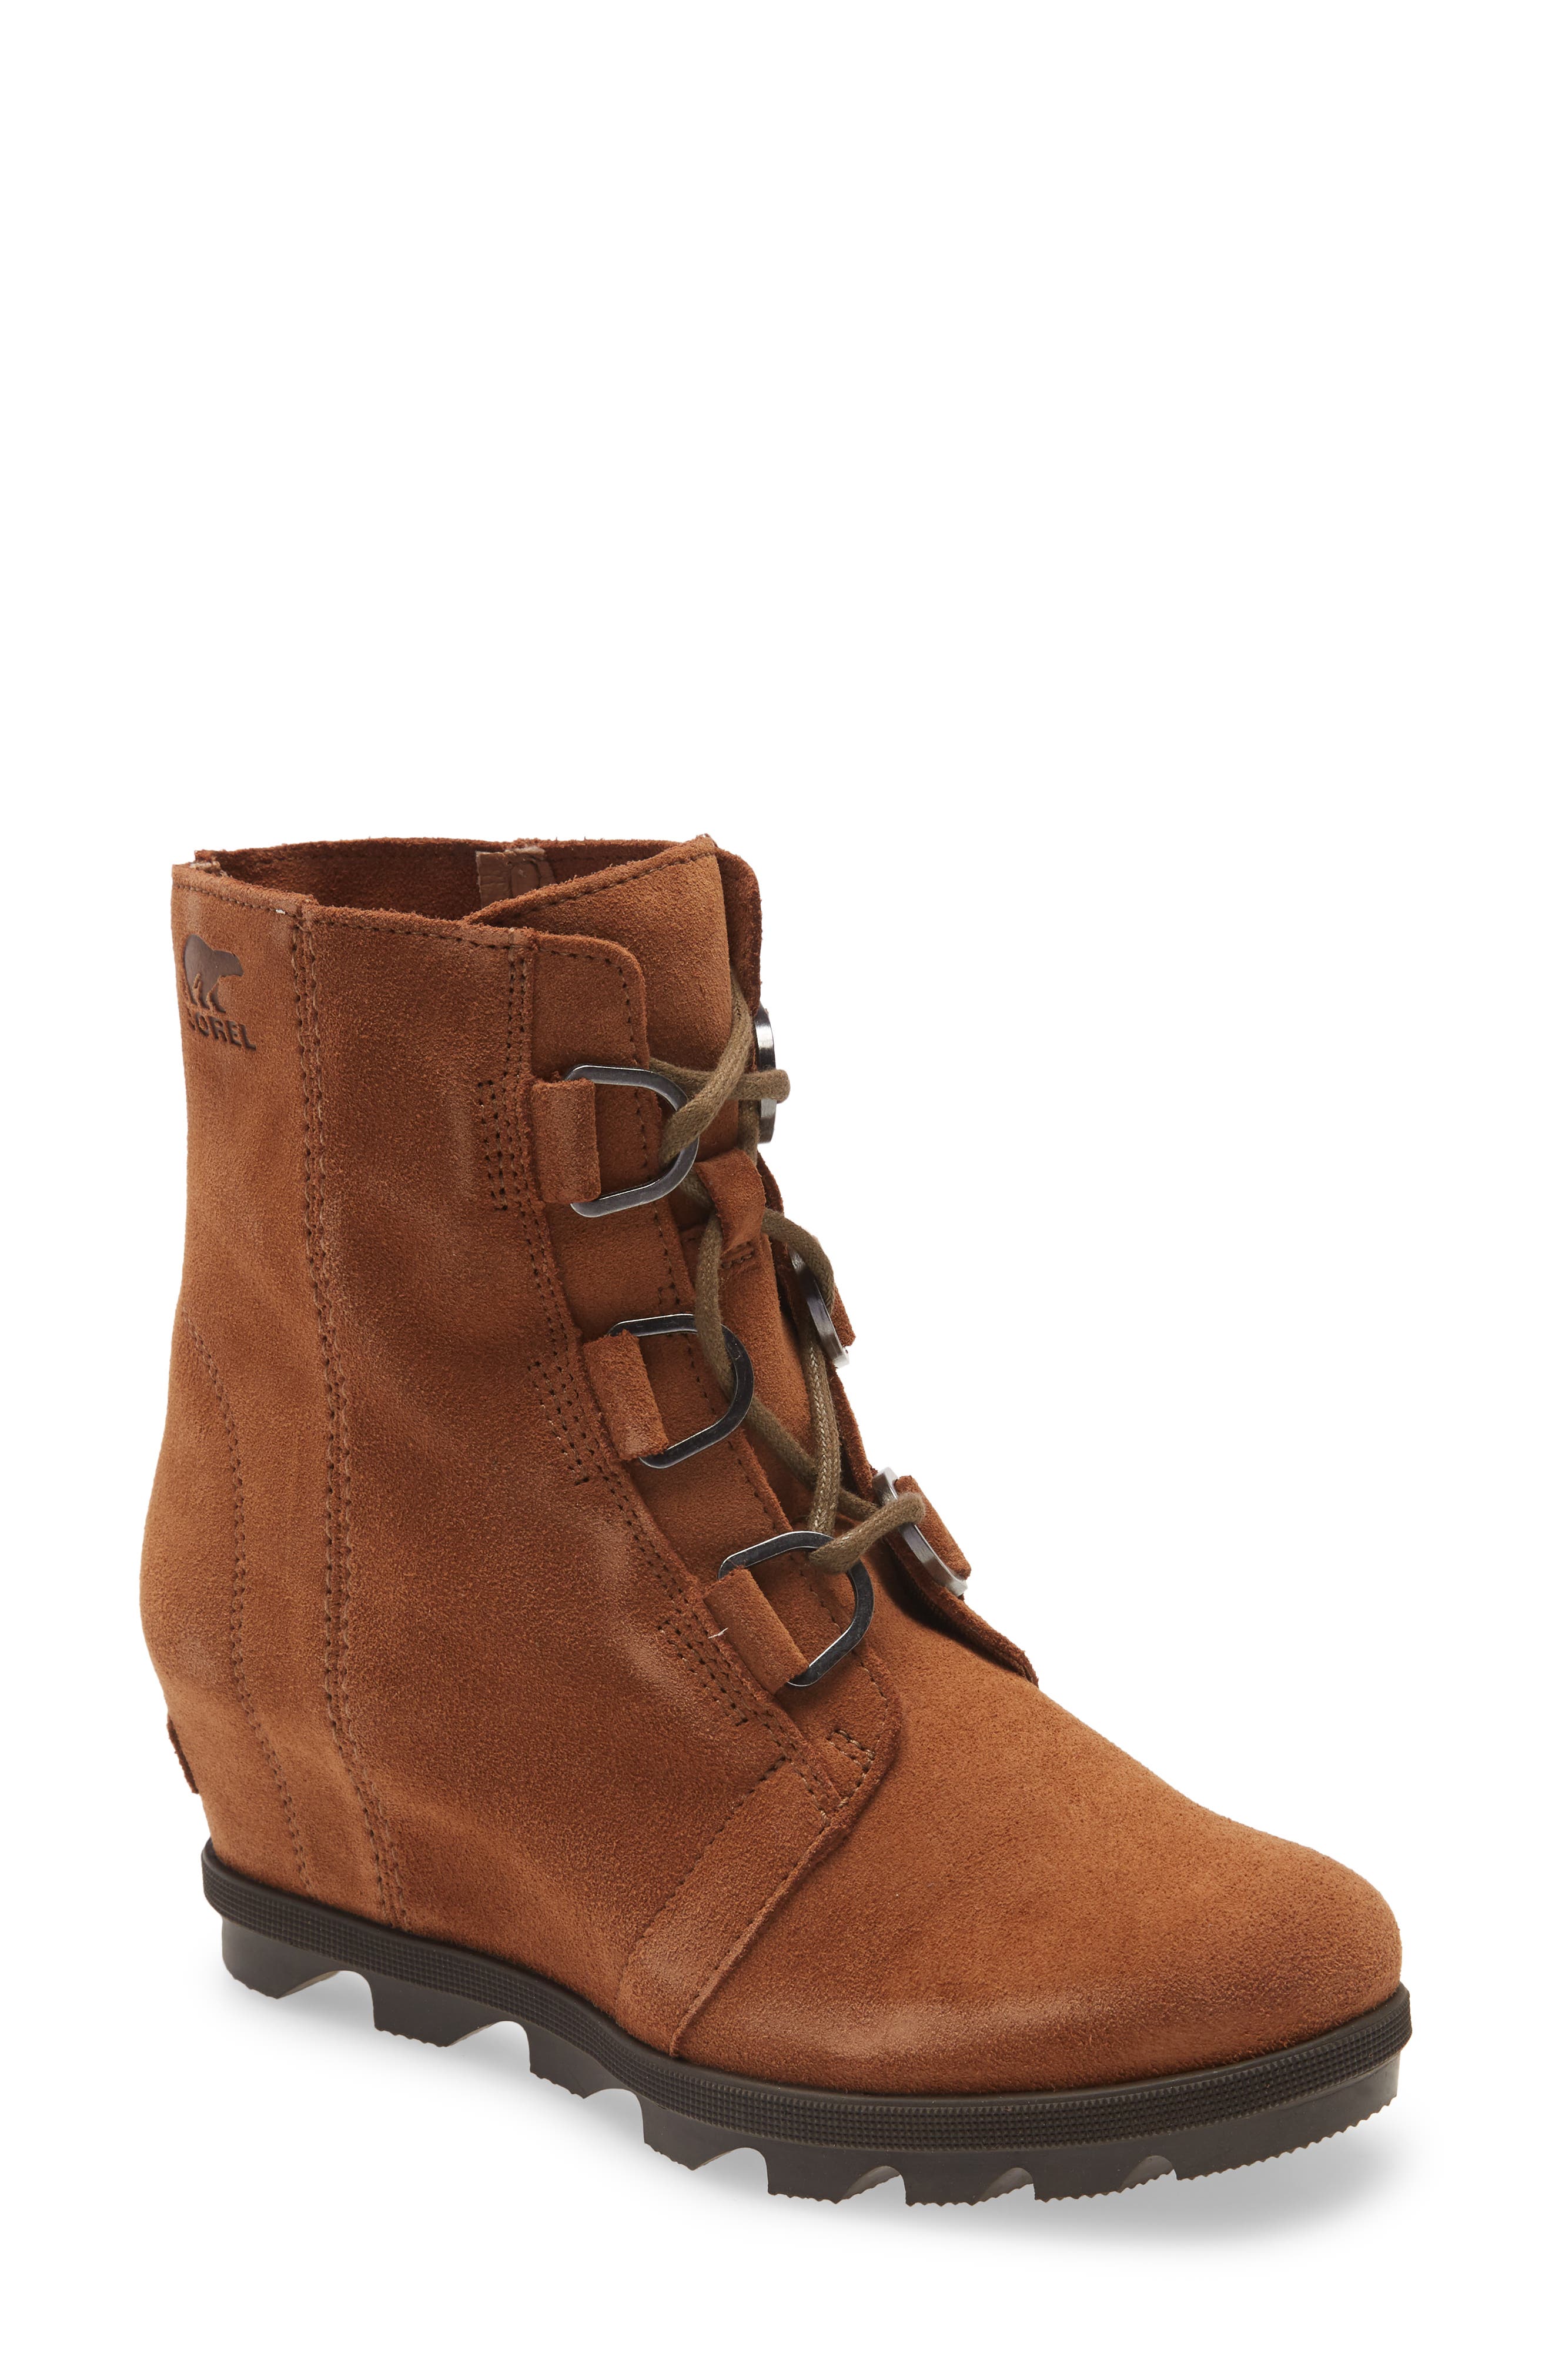 Girls' SOREL Boots \u0026 Booties | Nordstrom